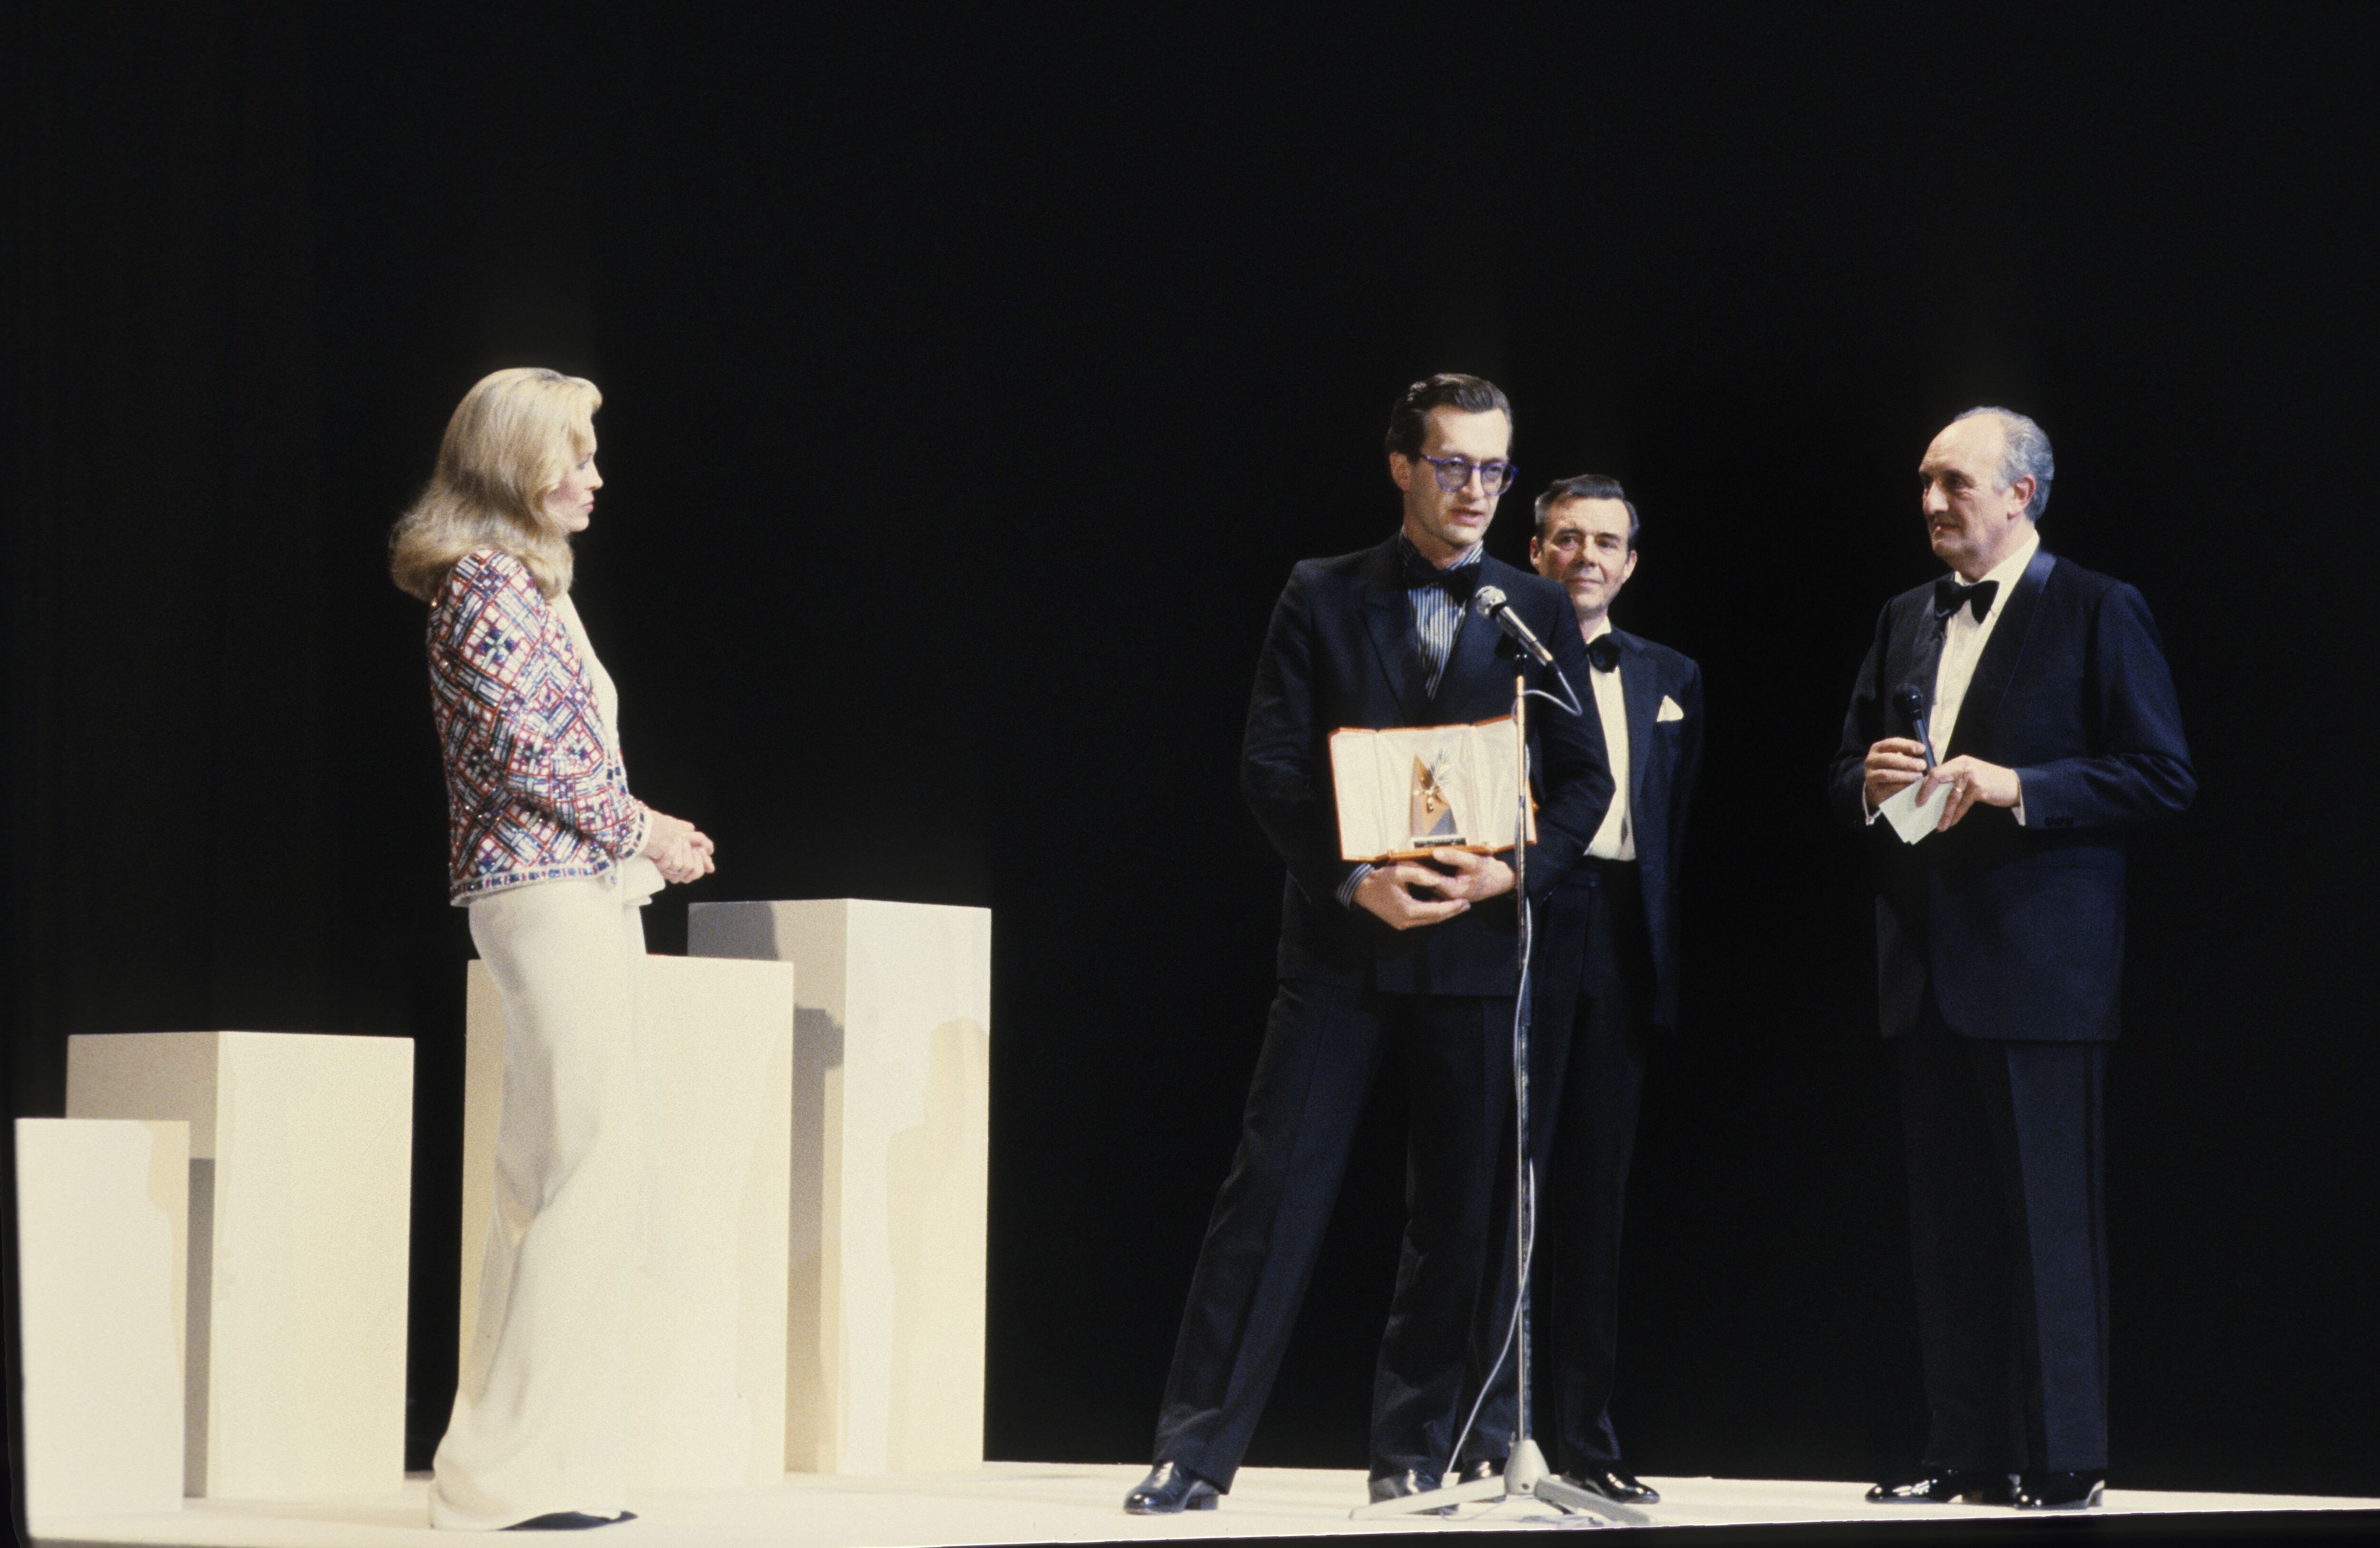 Wim Wenders, con la Palma de Oro de Cannes en mayo de 1984. Le rodean Faye Dunaway, Dirk Bogarde y el presentador francés Pierre Tchernia.